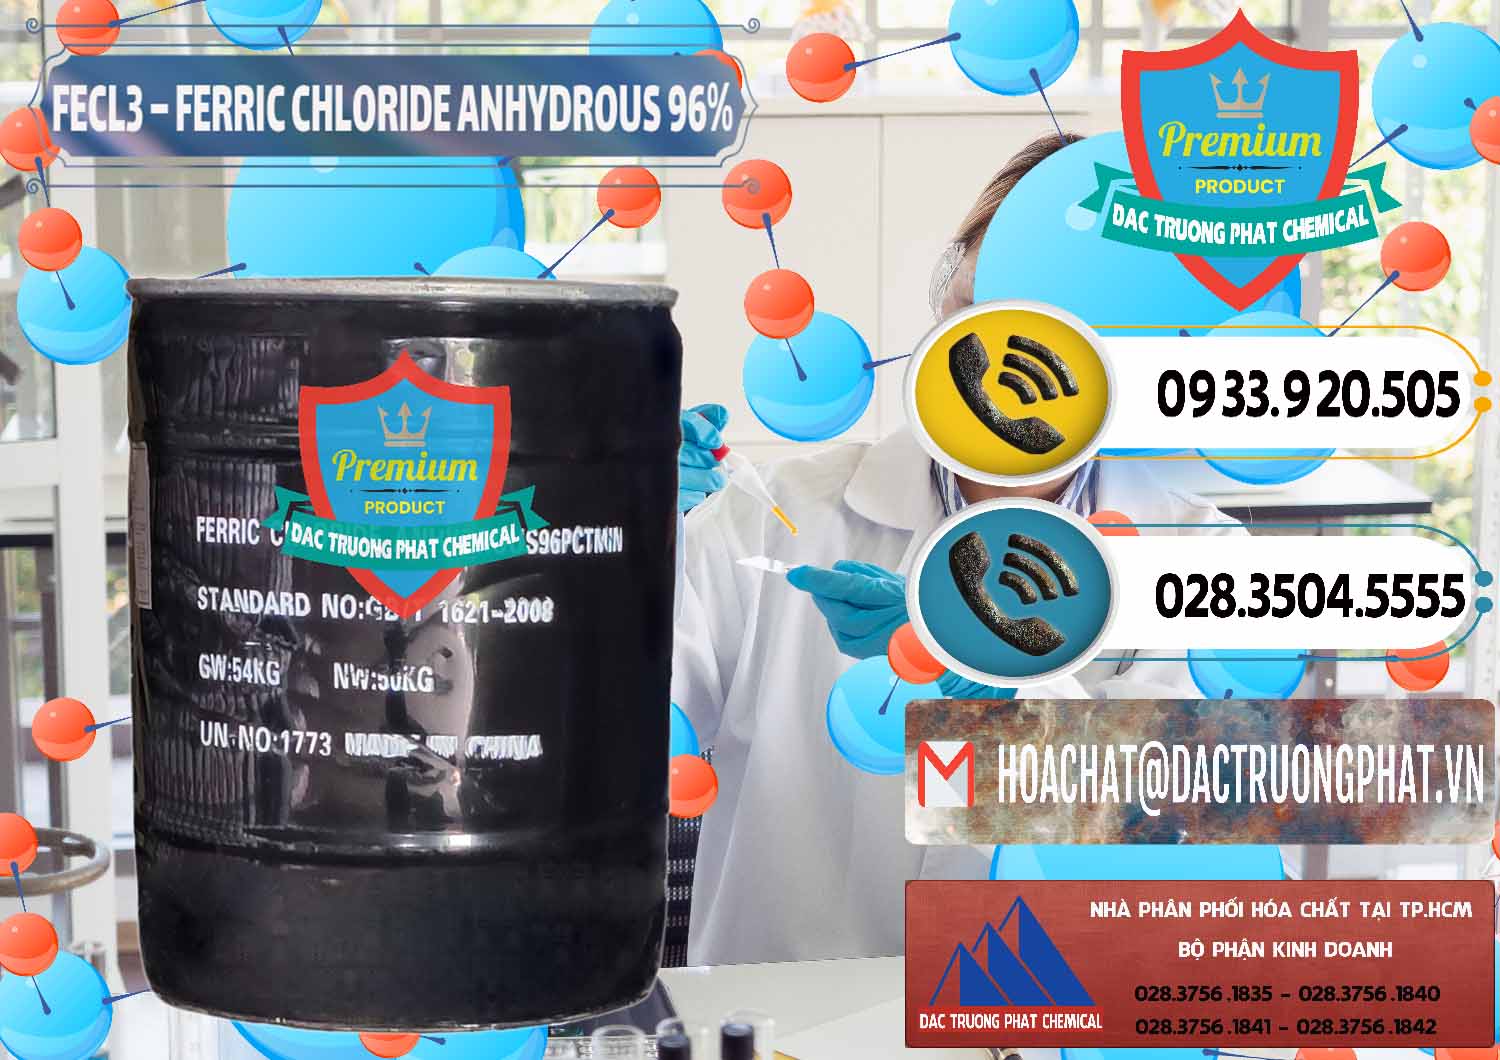 Cty chuyên phân phối _ bán FECL3 – Ferric Chloride Anhydrous 96% Trung Quốc China - 0065 - Chuyên phân phối và cung cấp hóa chất tại TP.HCM - hoachatdetnhuom.vn